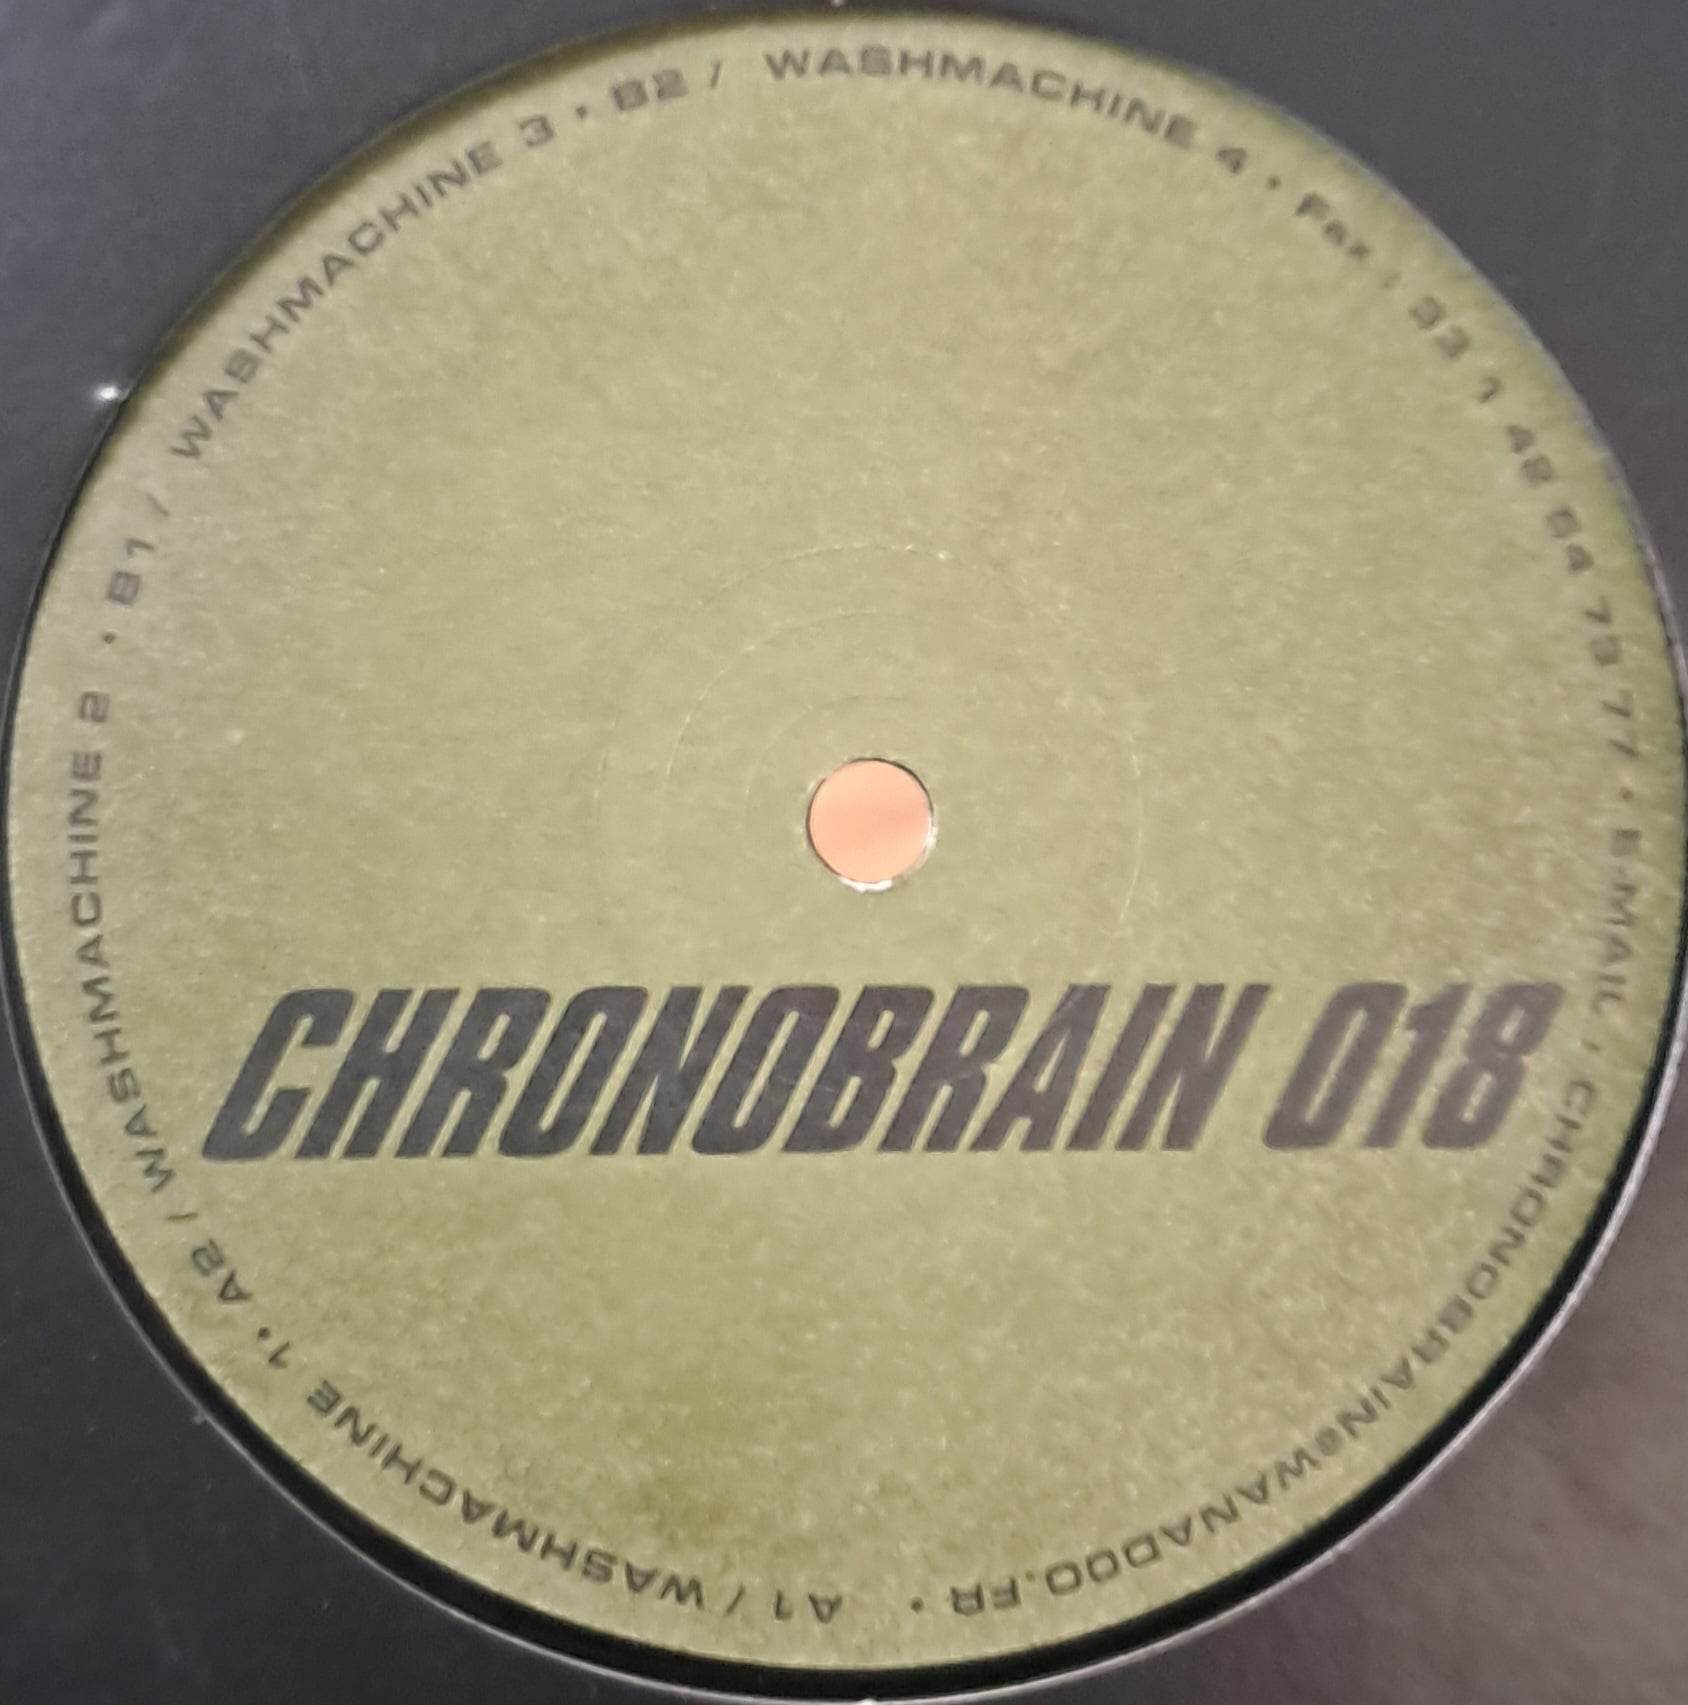 Chronobrain 18 - vinyle techno